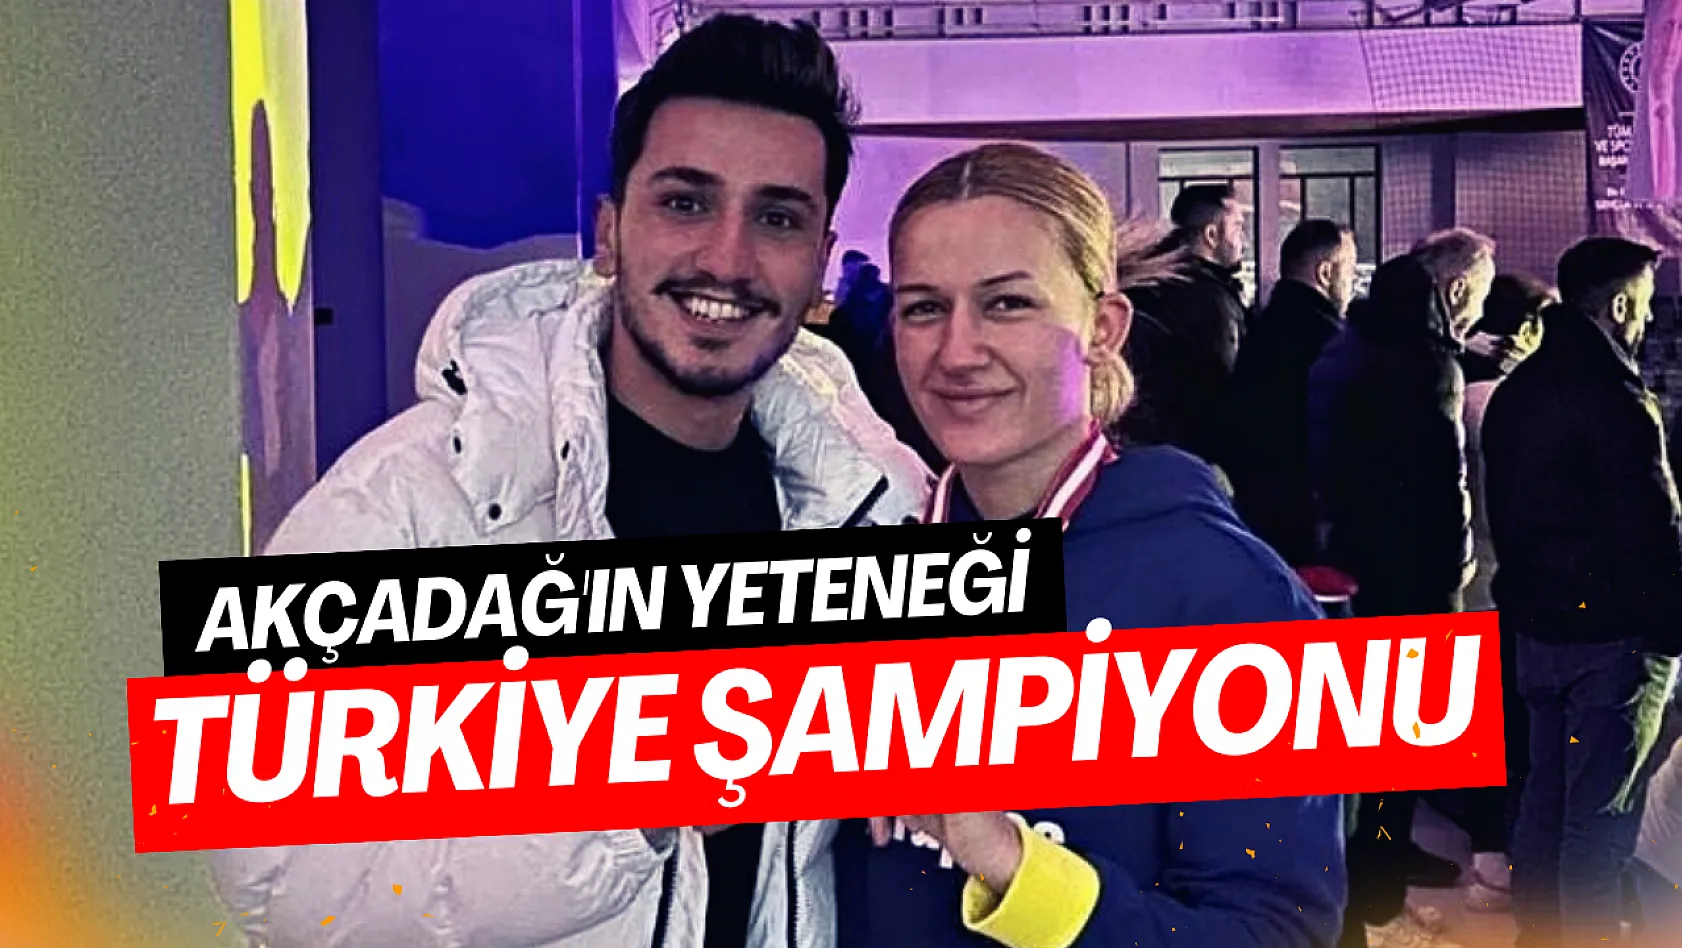 Akçadağ'ın yeteneği Türkiye şampiyonu